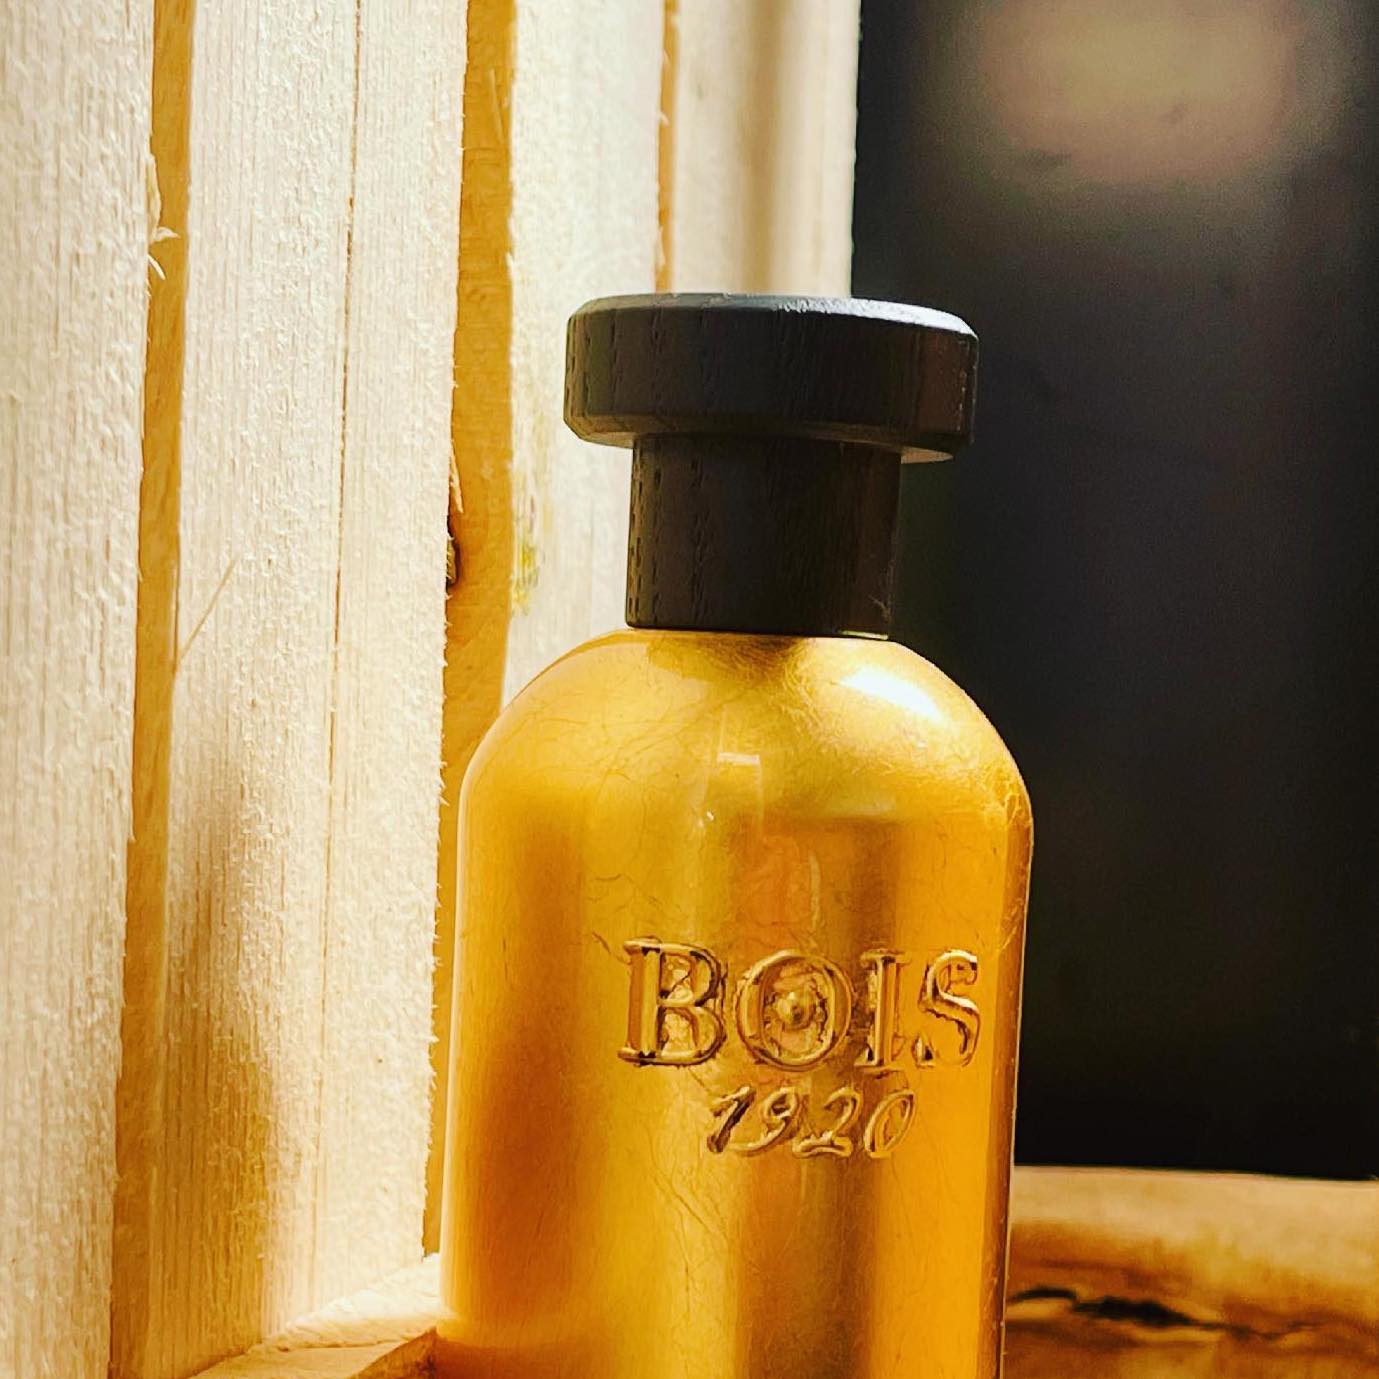 Bois 1920 Oro 1920 EDP | My Perfume Shop Australia